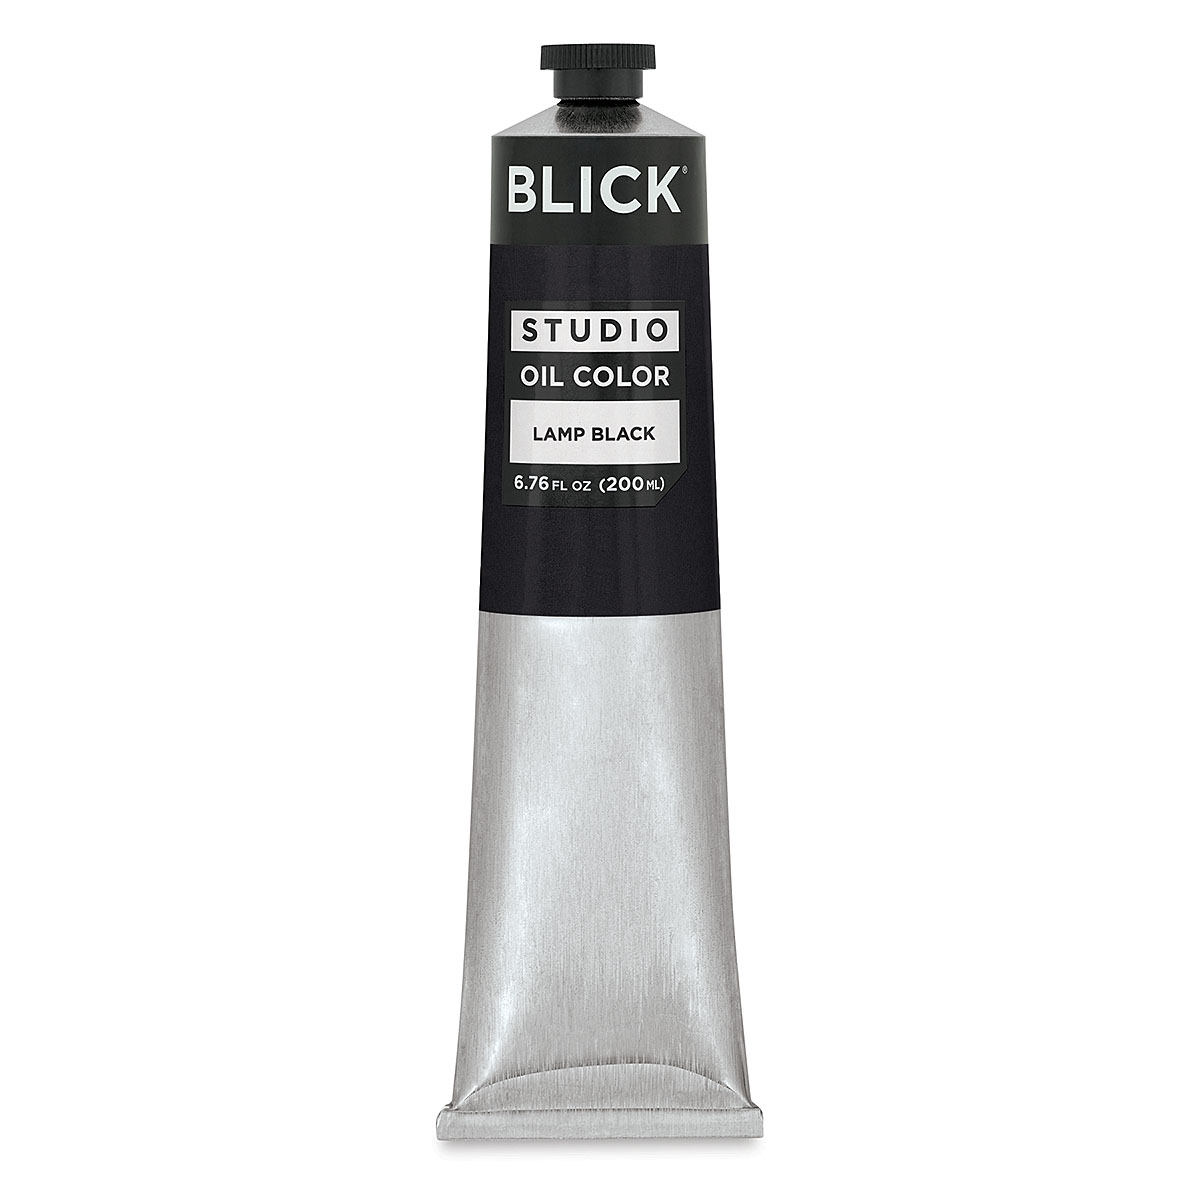 Blick Studio Oil Colors - Ivory Black, 40 ml tube